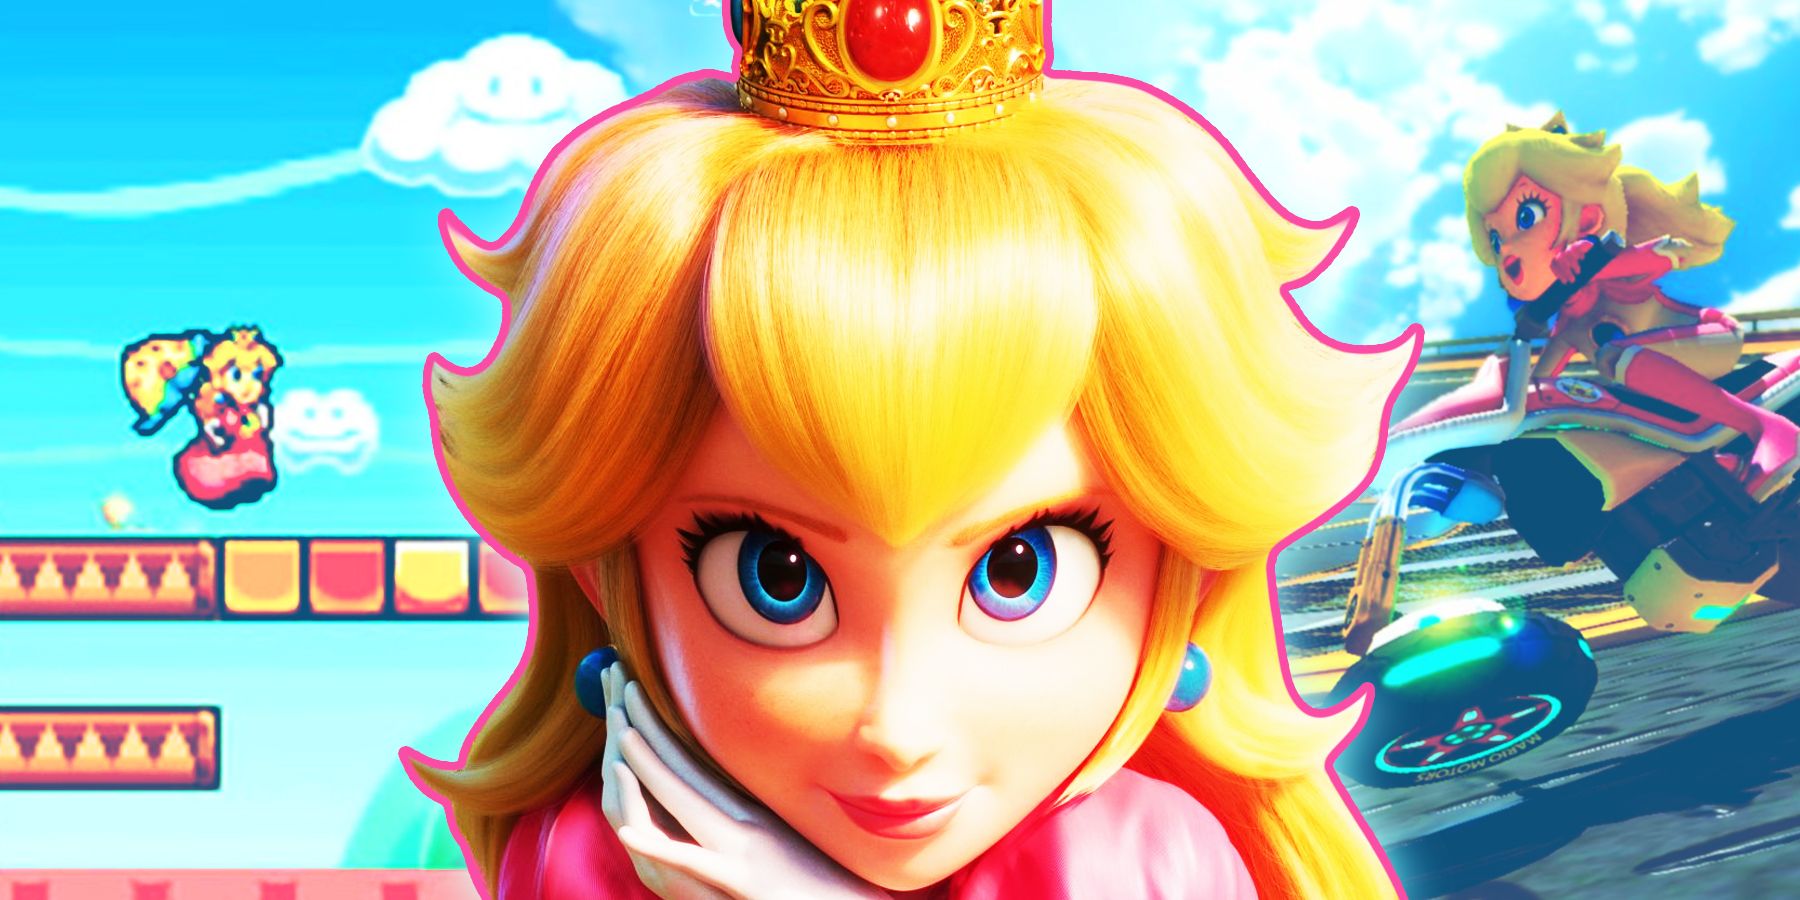 Why Nintendo Needs to Make a Mainline Princess Peach Game